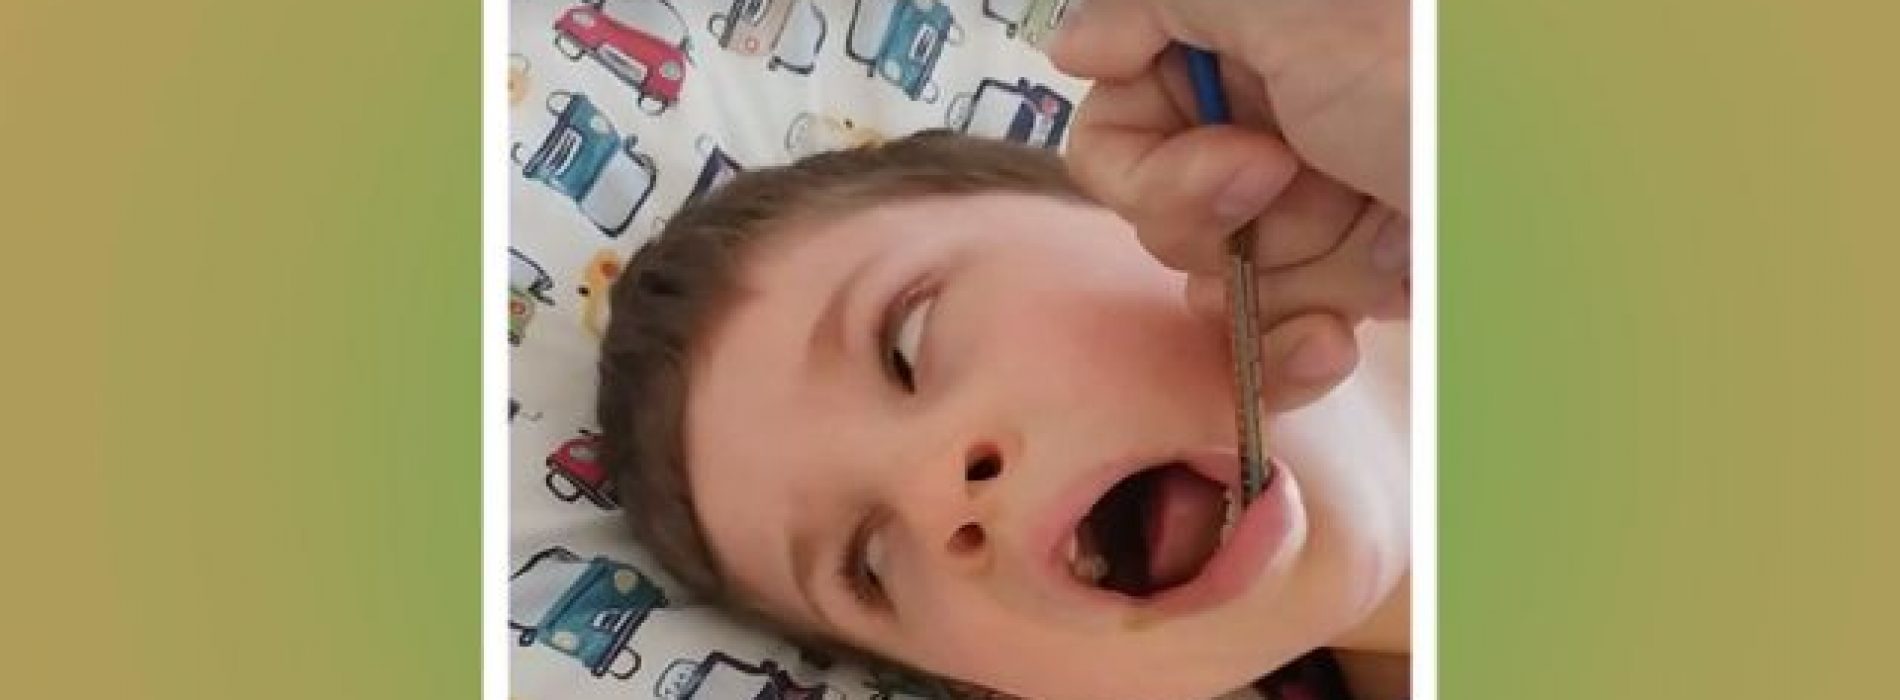 Kijk hier hoe snel cannabisolie een einde maakt aan de epileptische aanval van een 7-jarig jongetje